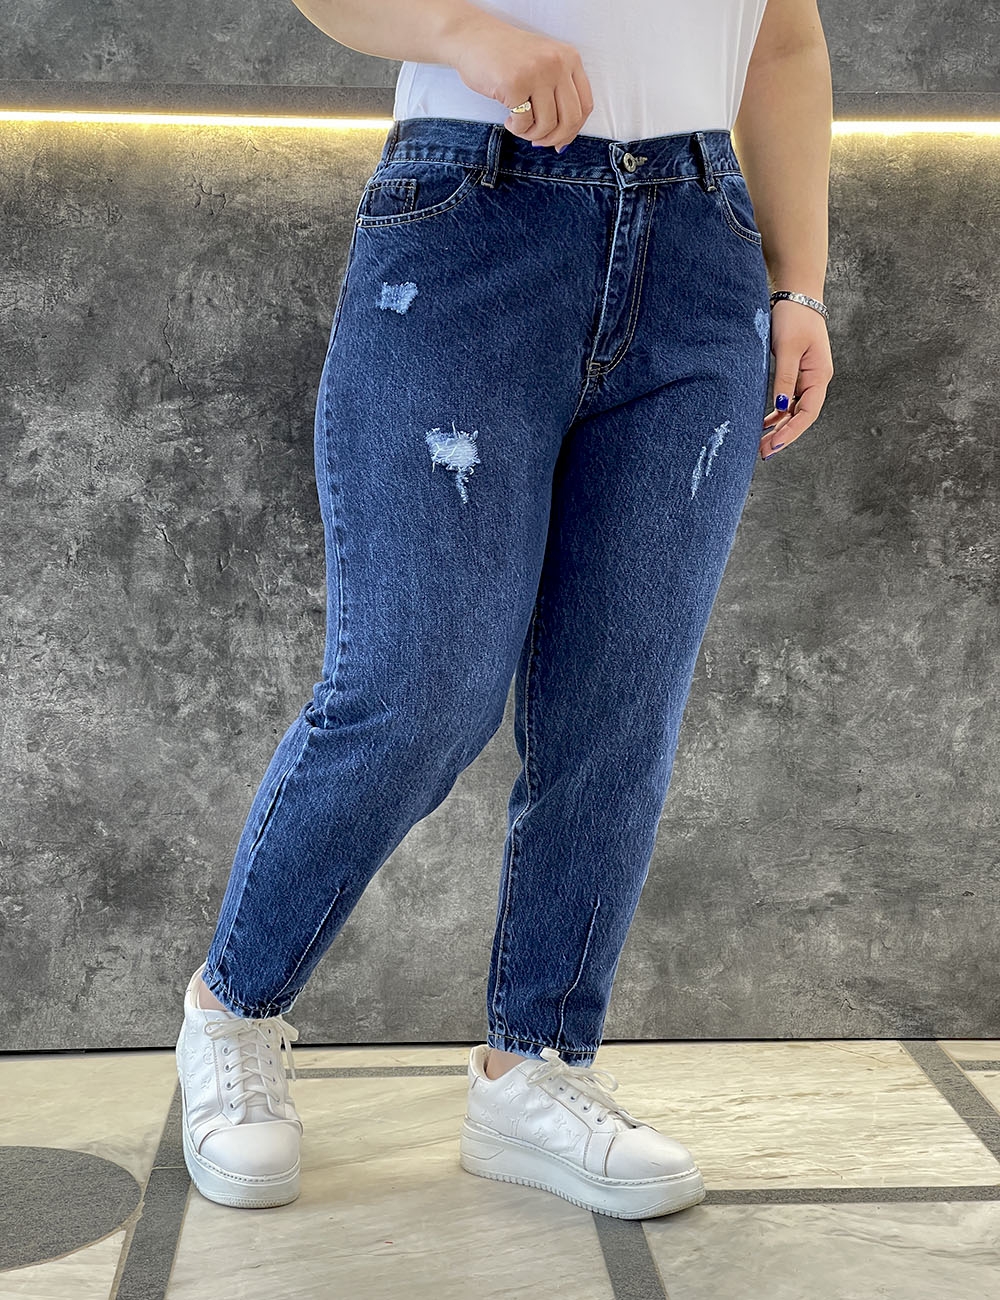 خرید شلوار جین پلاس سایز زنانه | مروارید شب